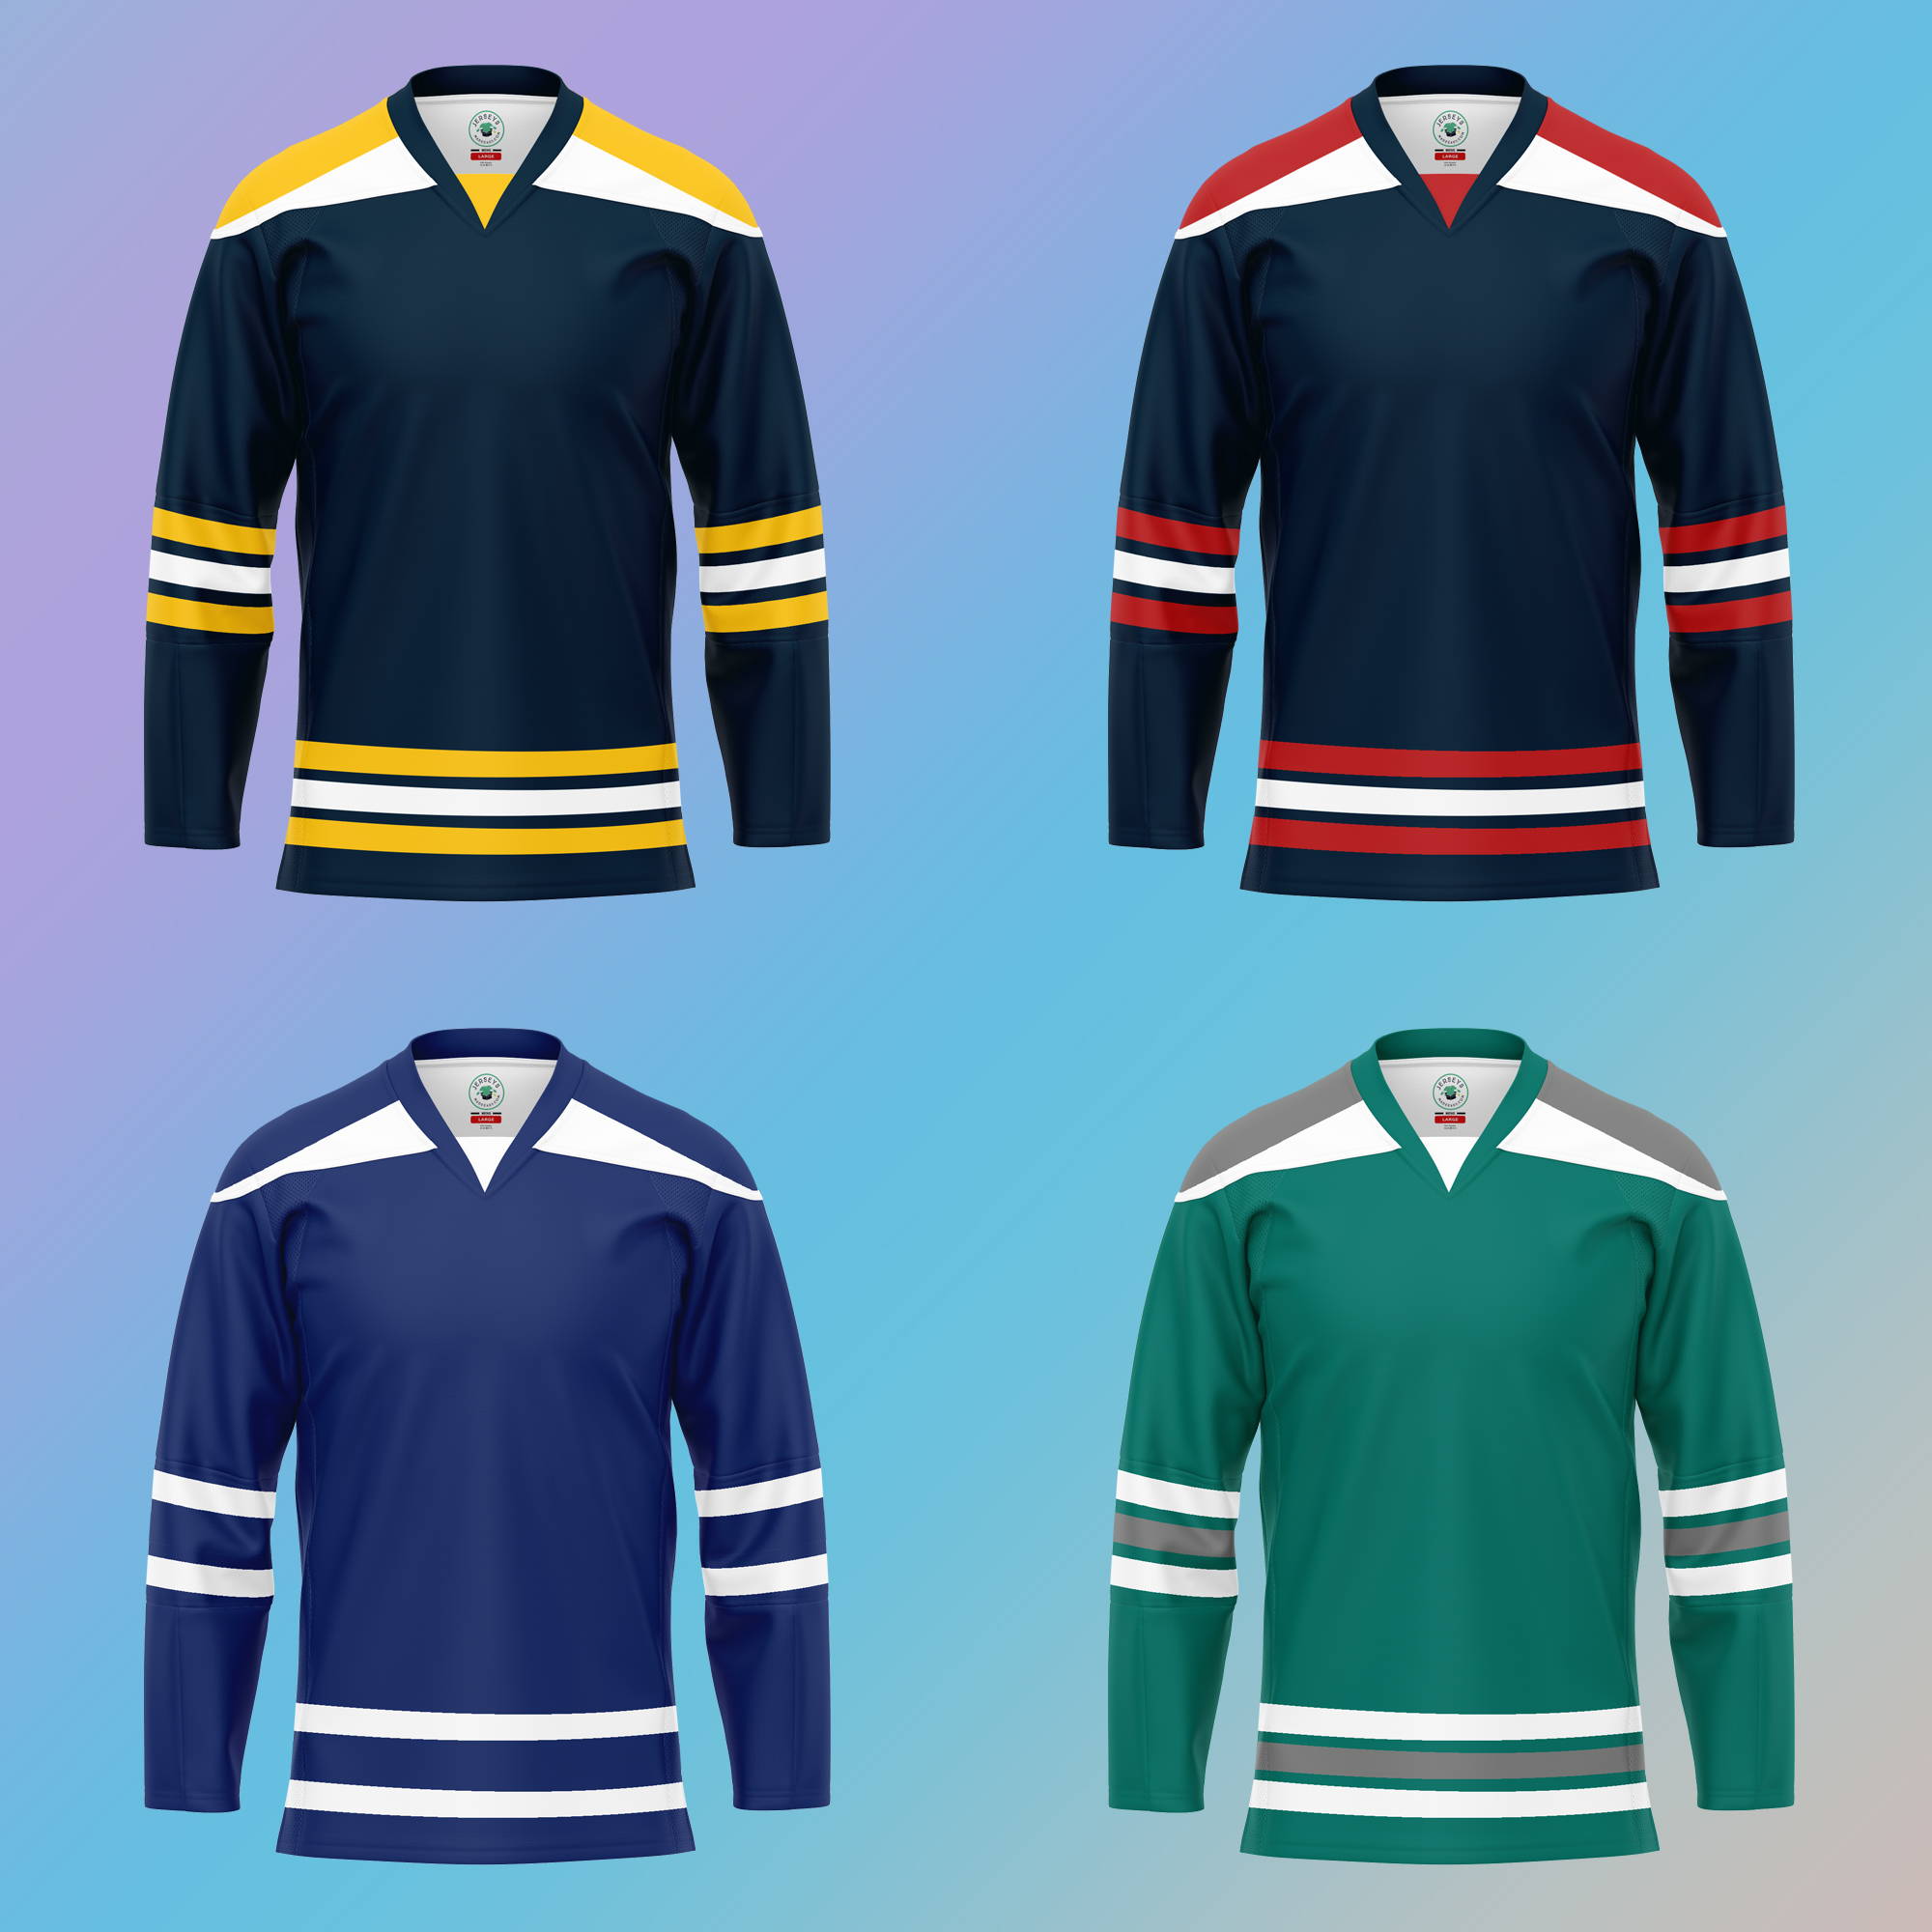 How To Design The Hockey Uniform